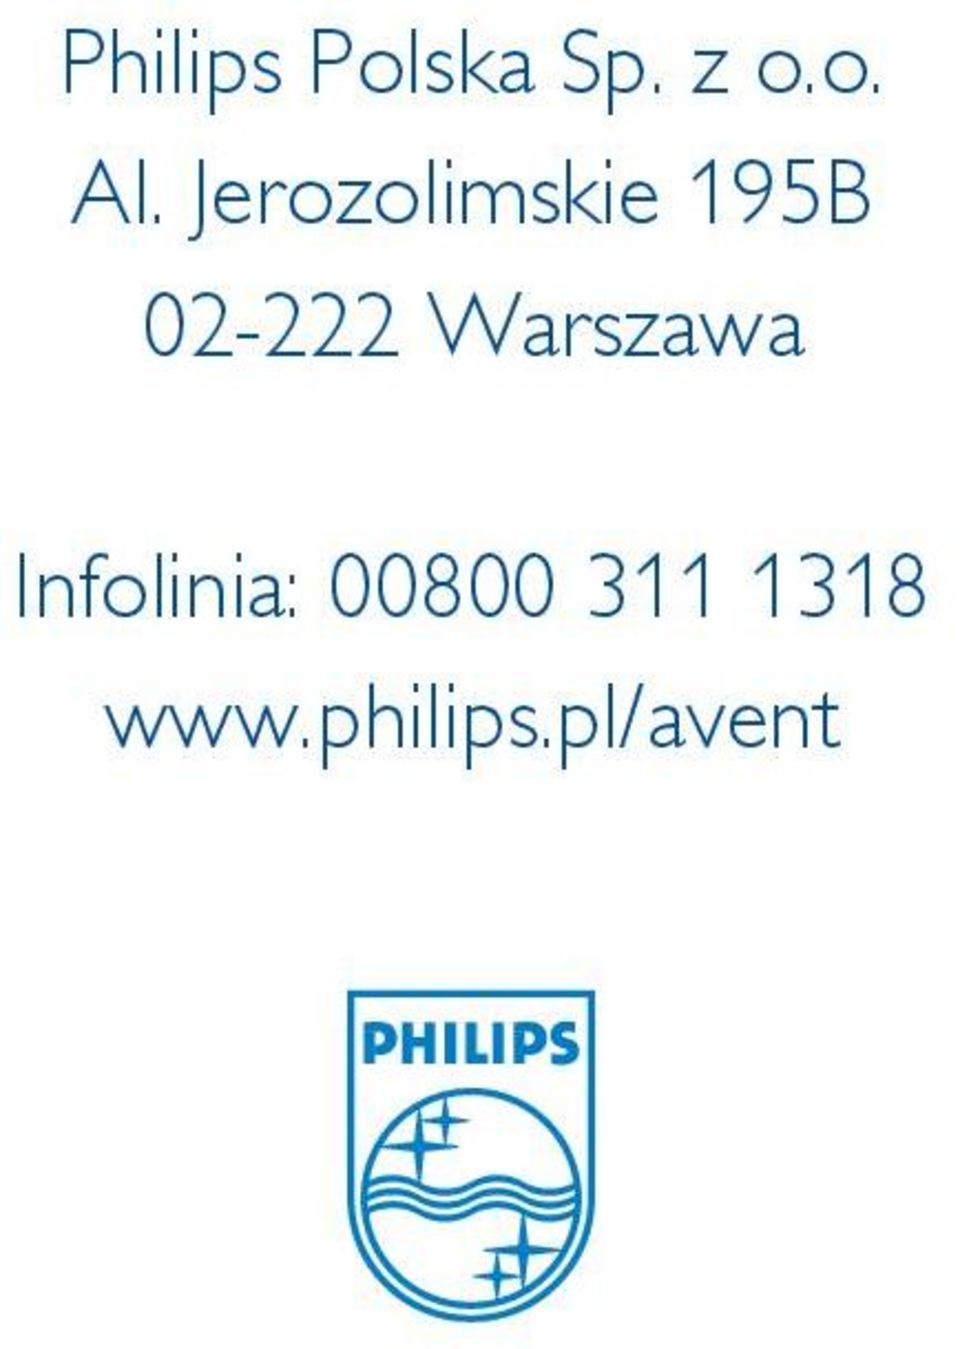 Warszawa Infolinia: 00800